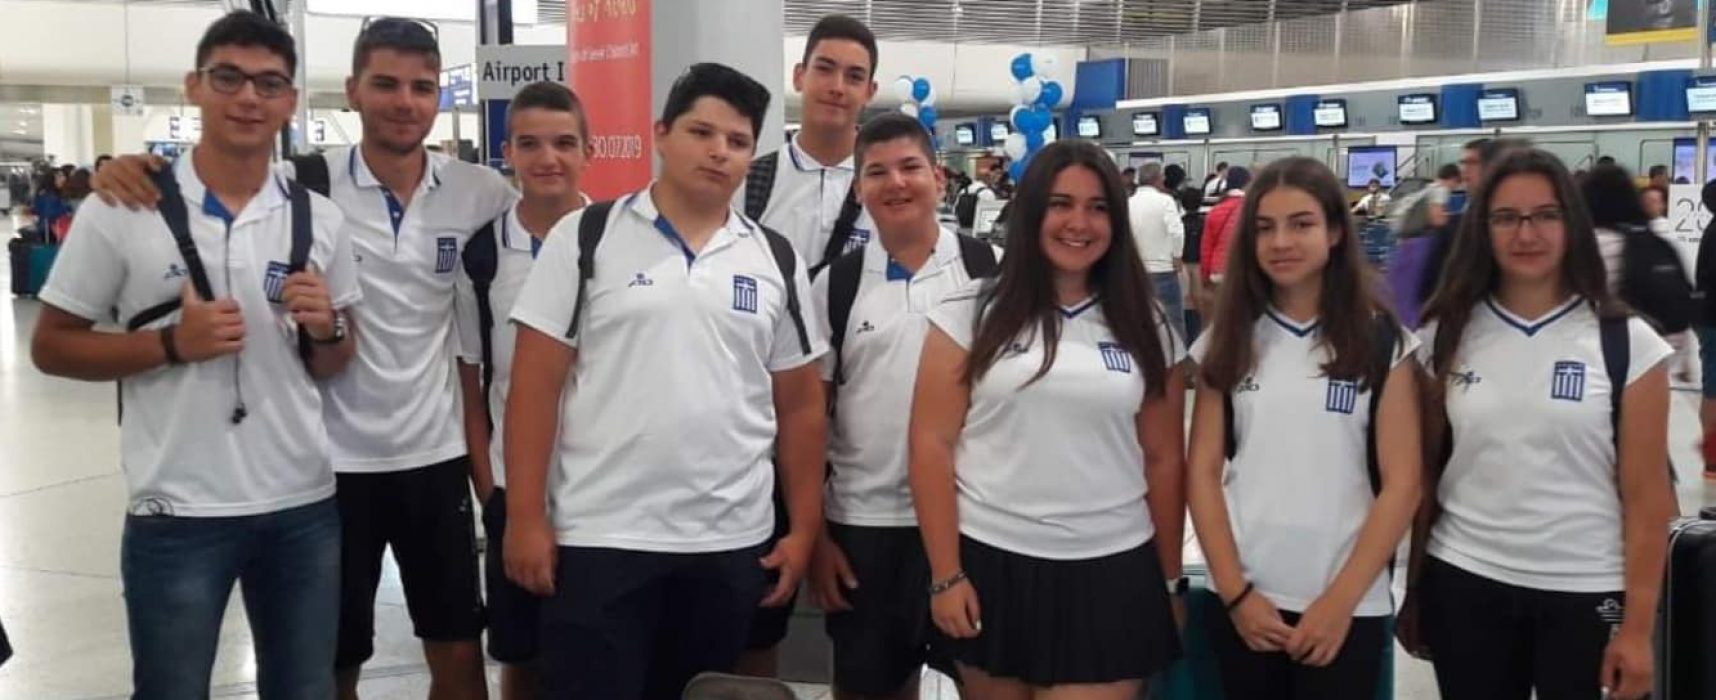 Με 12 αθλητές η Ελλάδα στο European Youth Cup